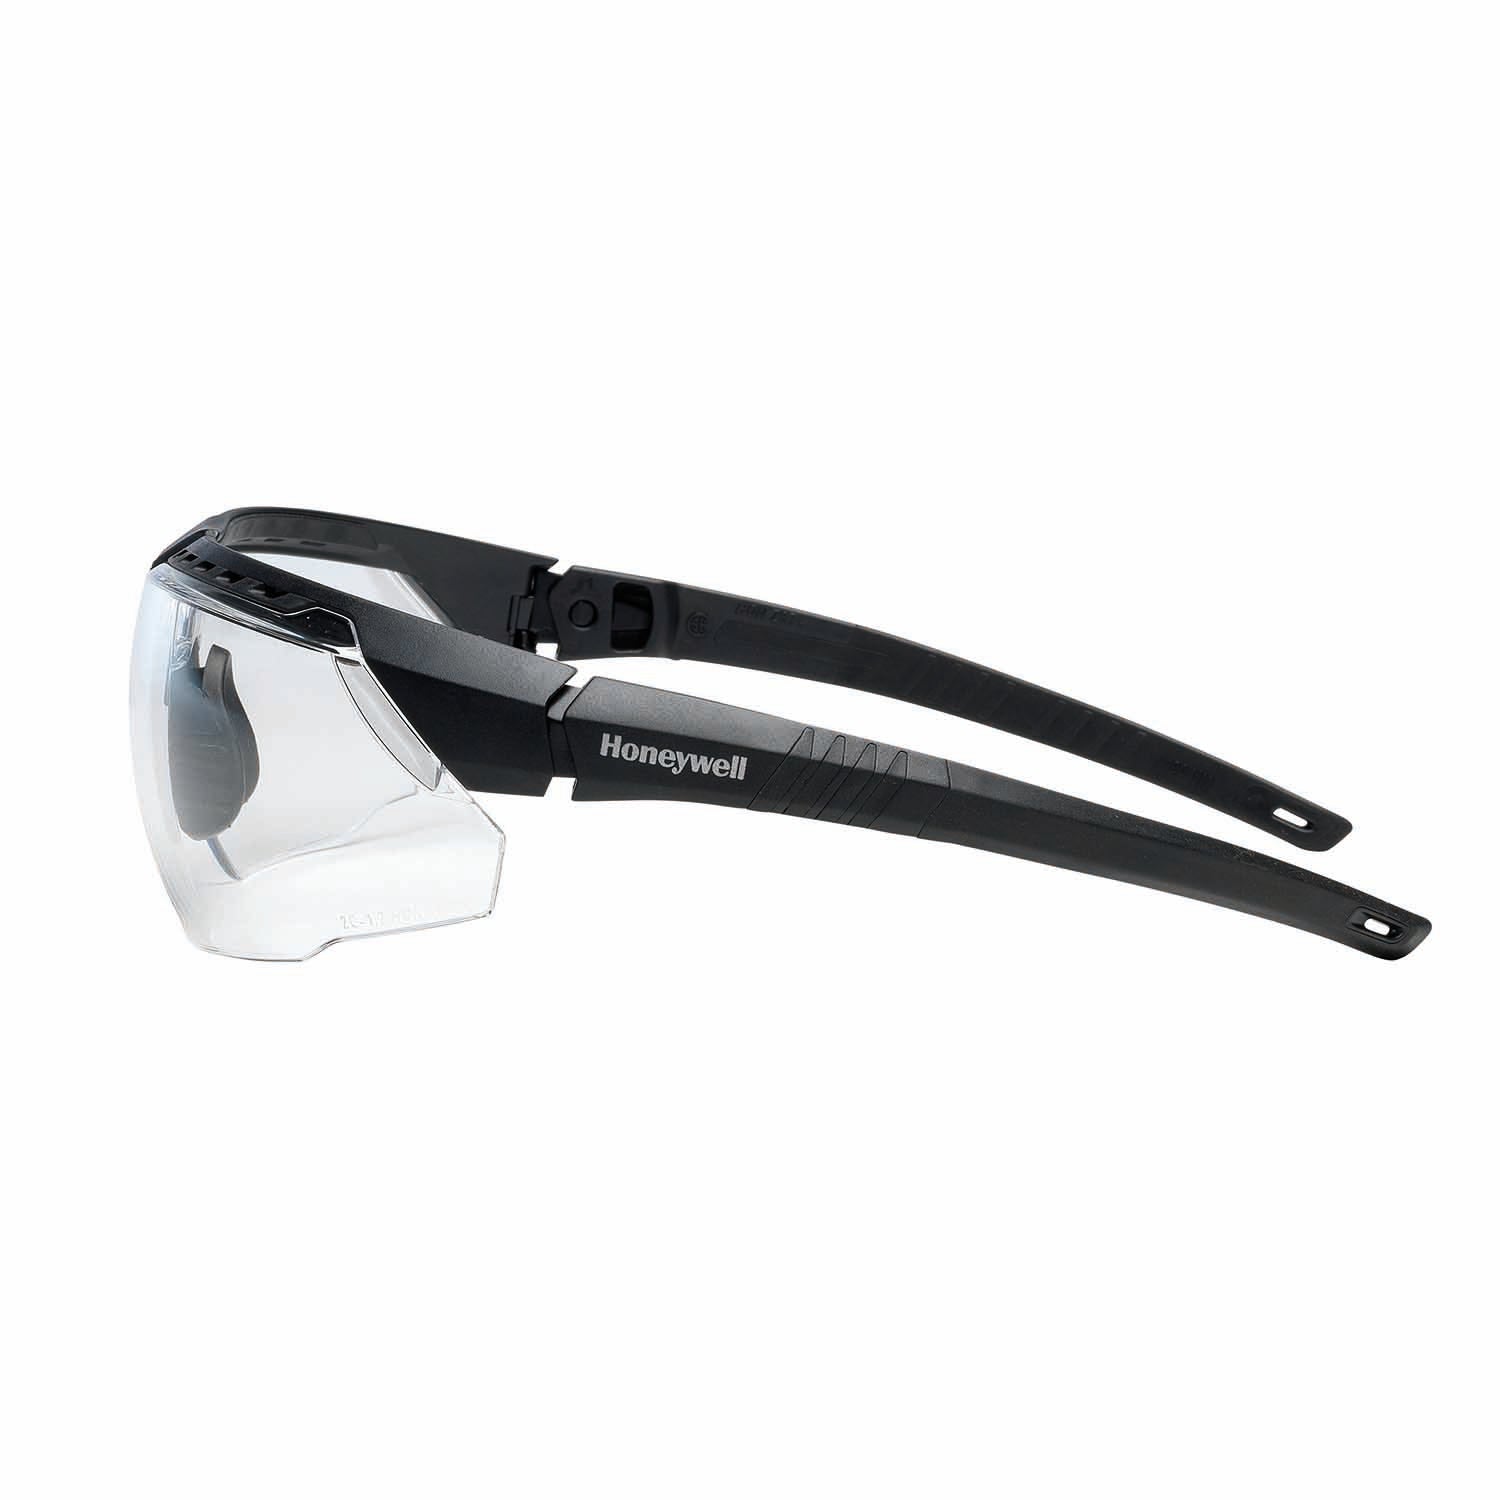 Honeywell 1034831 AVATAR Safety Glasses Black Frame Clear Lens